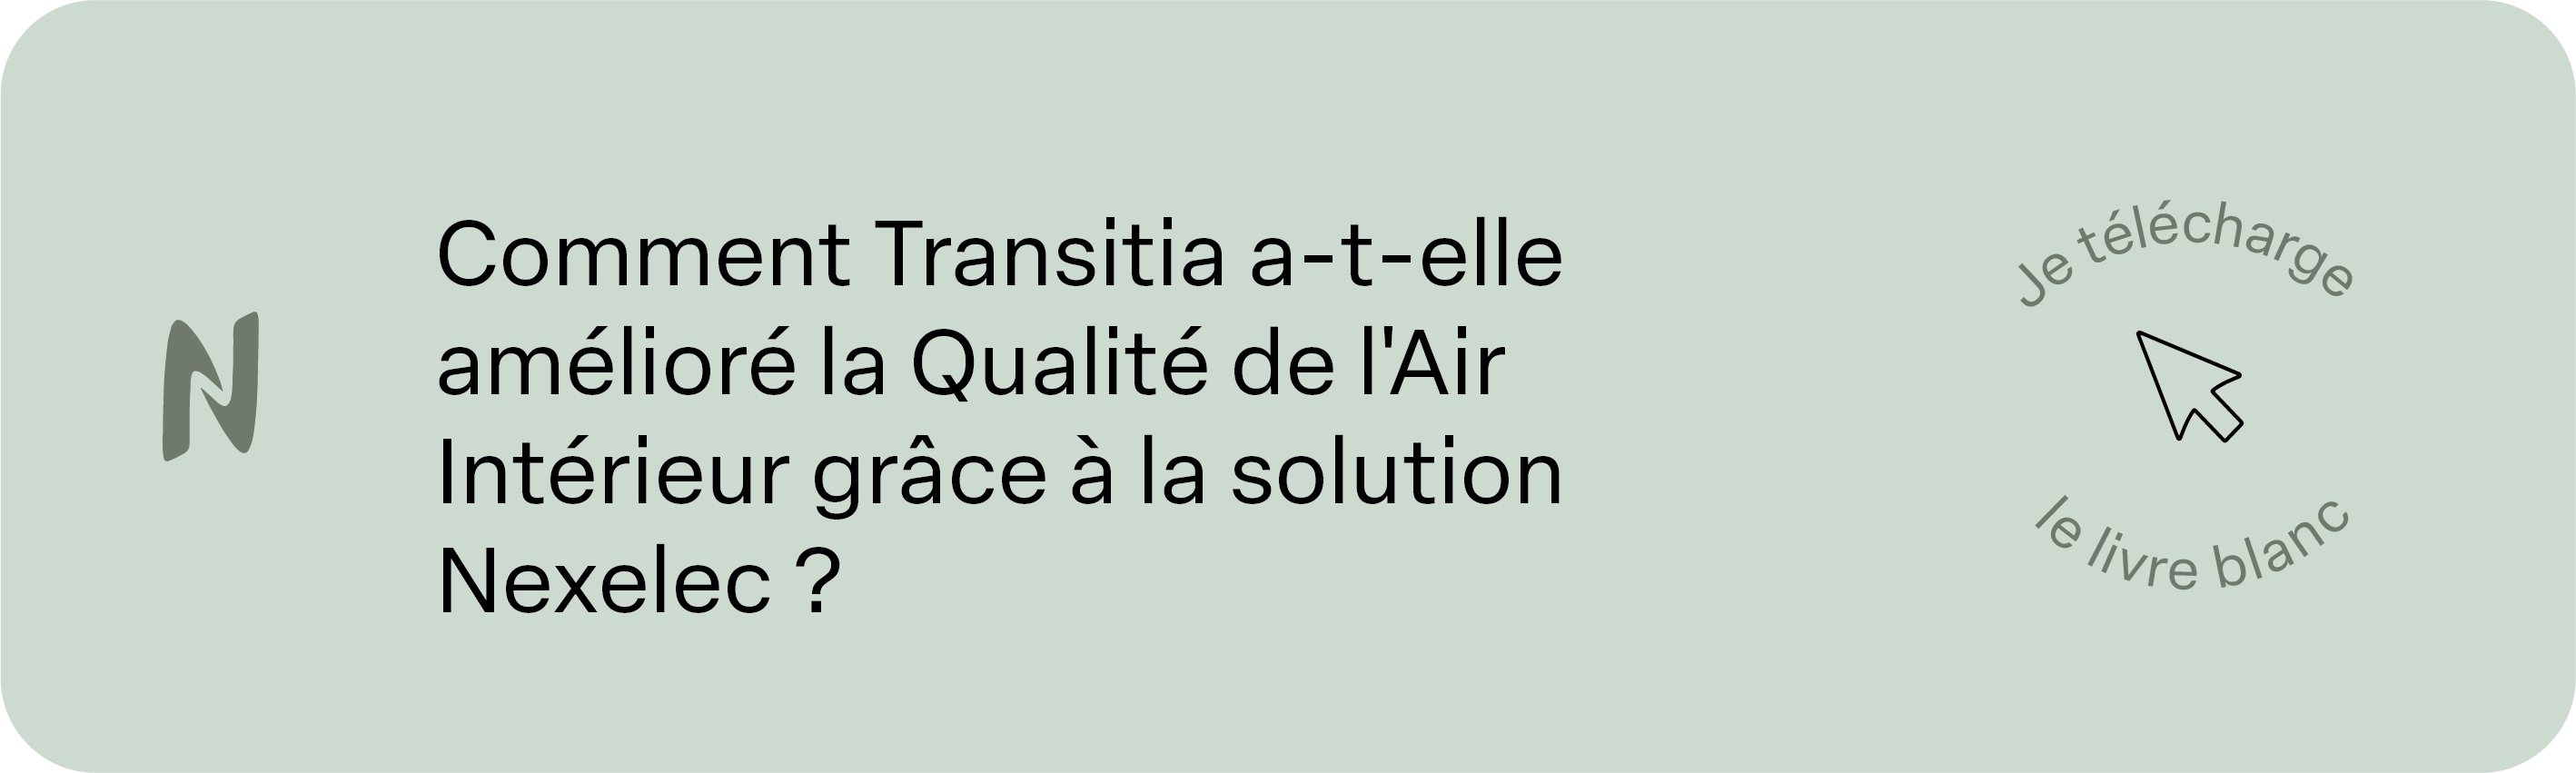 Comment Transitia a-t-elle amélioré la Qualité de l'Air Intérieur grâce à la solution Nexelec